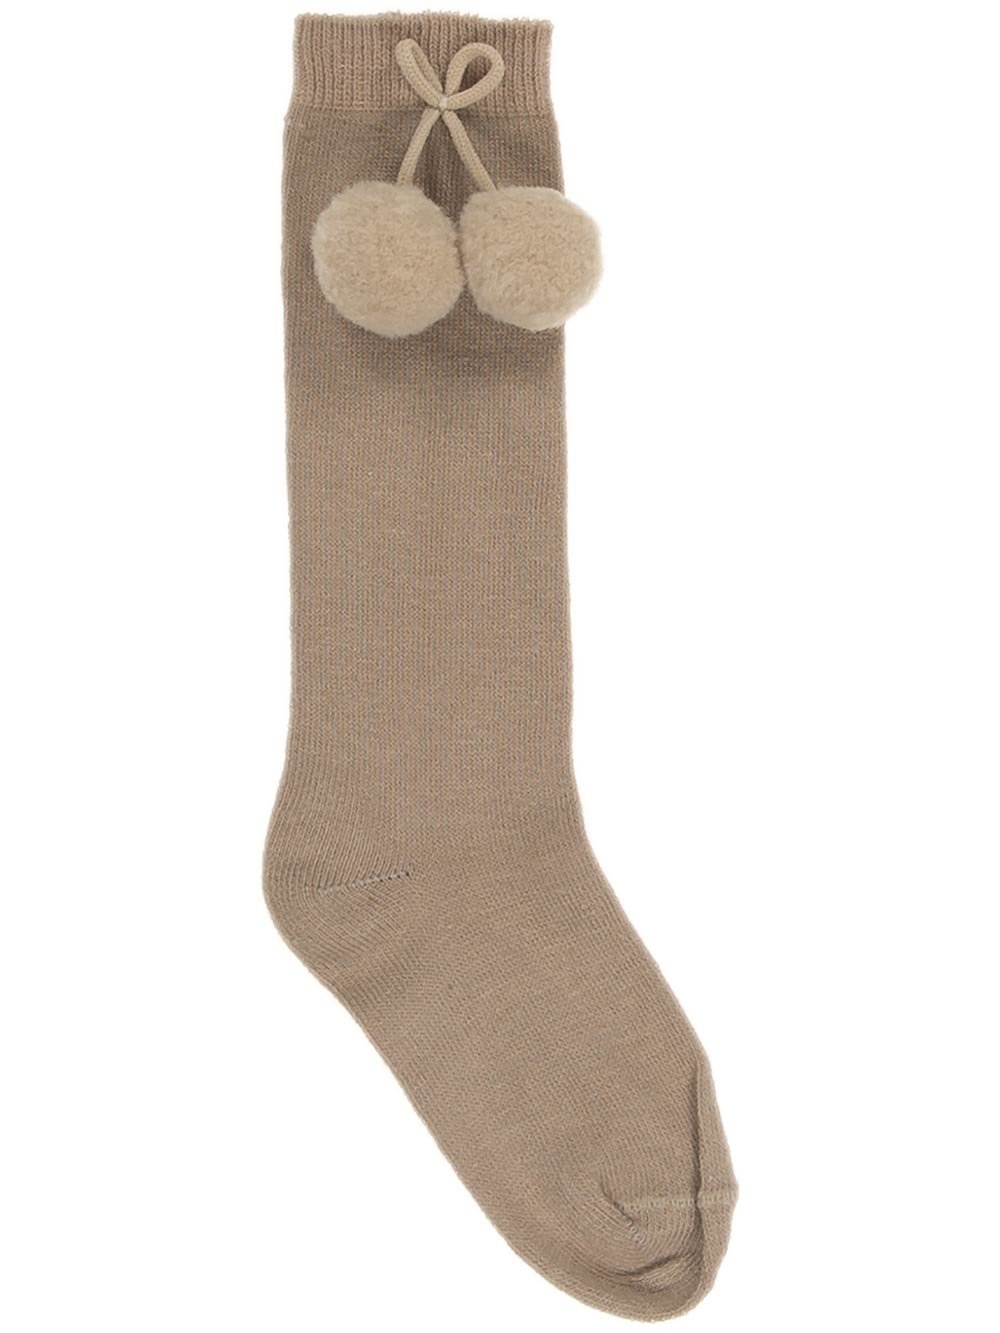 Carlomagno Unisex Knee High Pom Pom Socks in 4 colours size 16/17-28/30-2341 